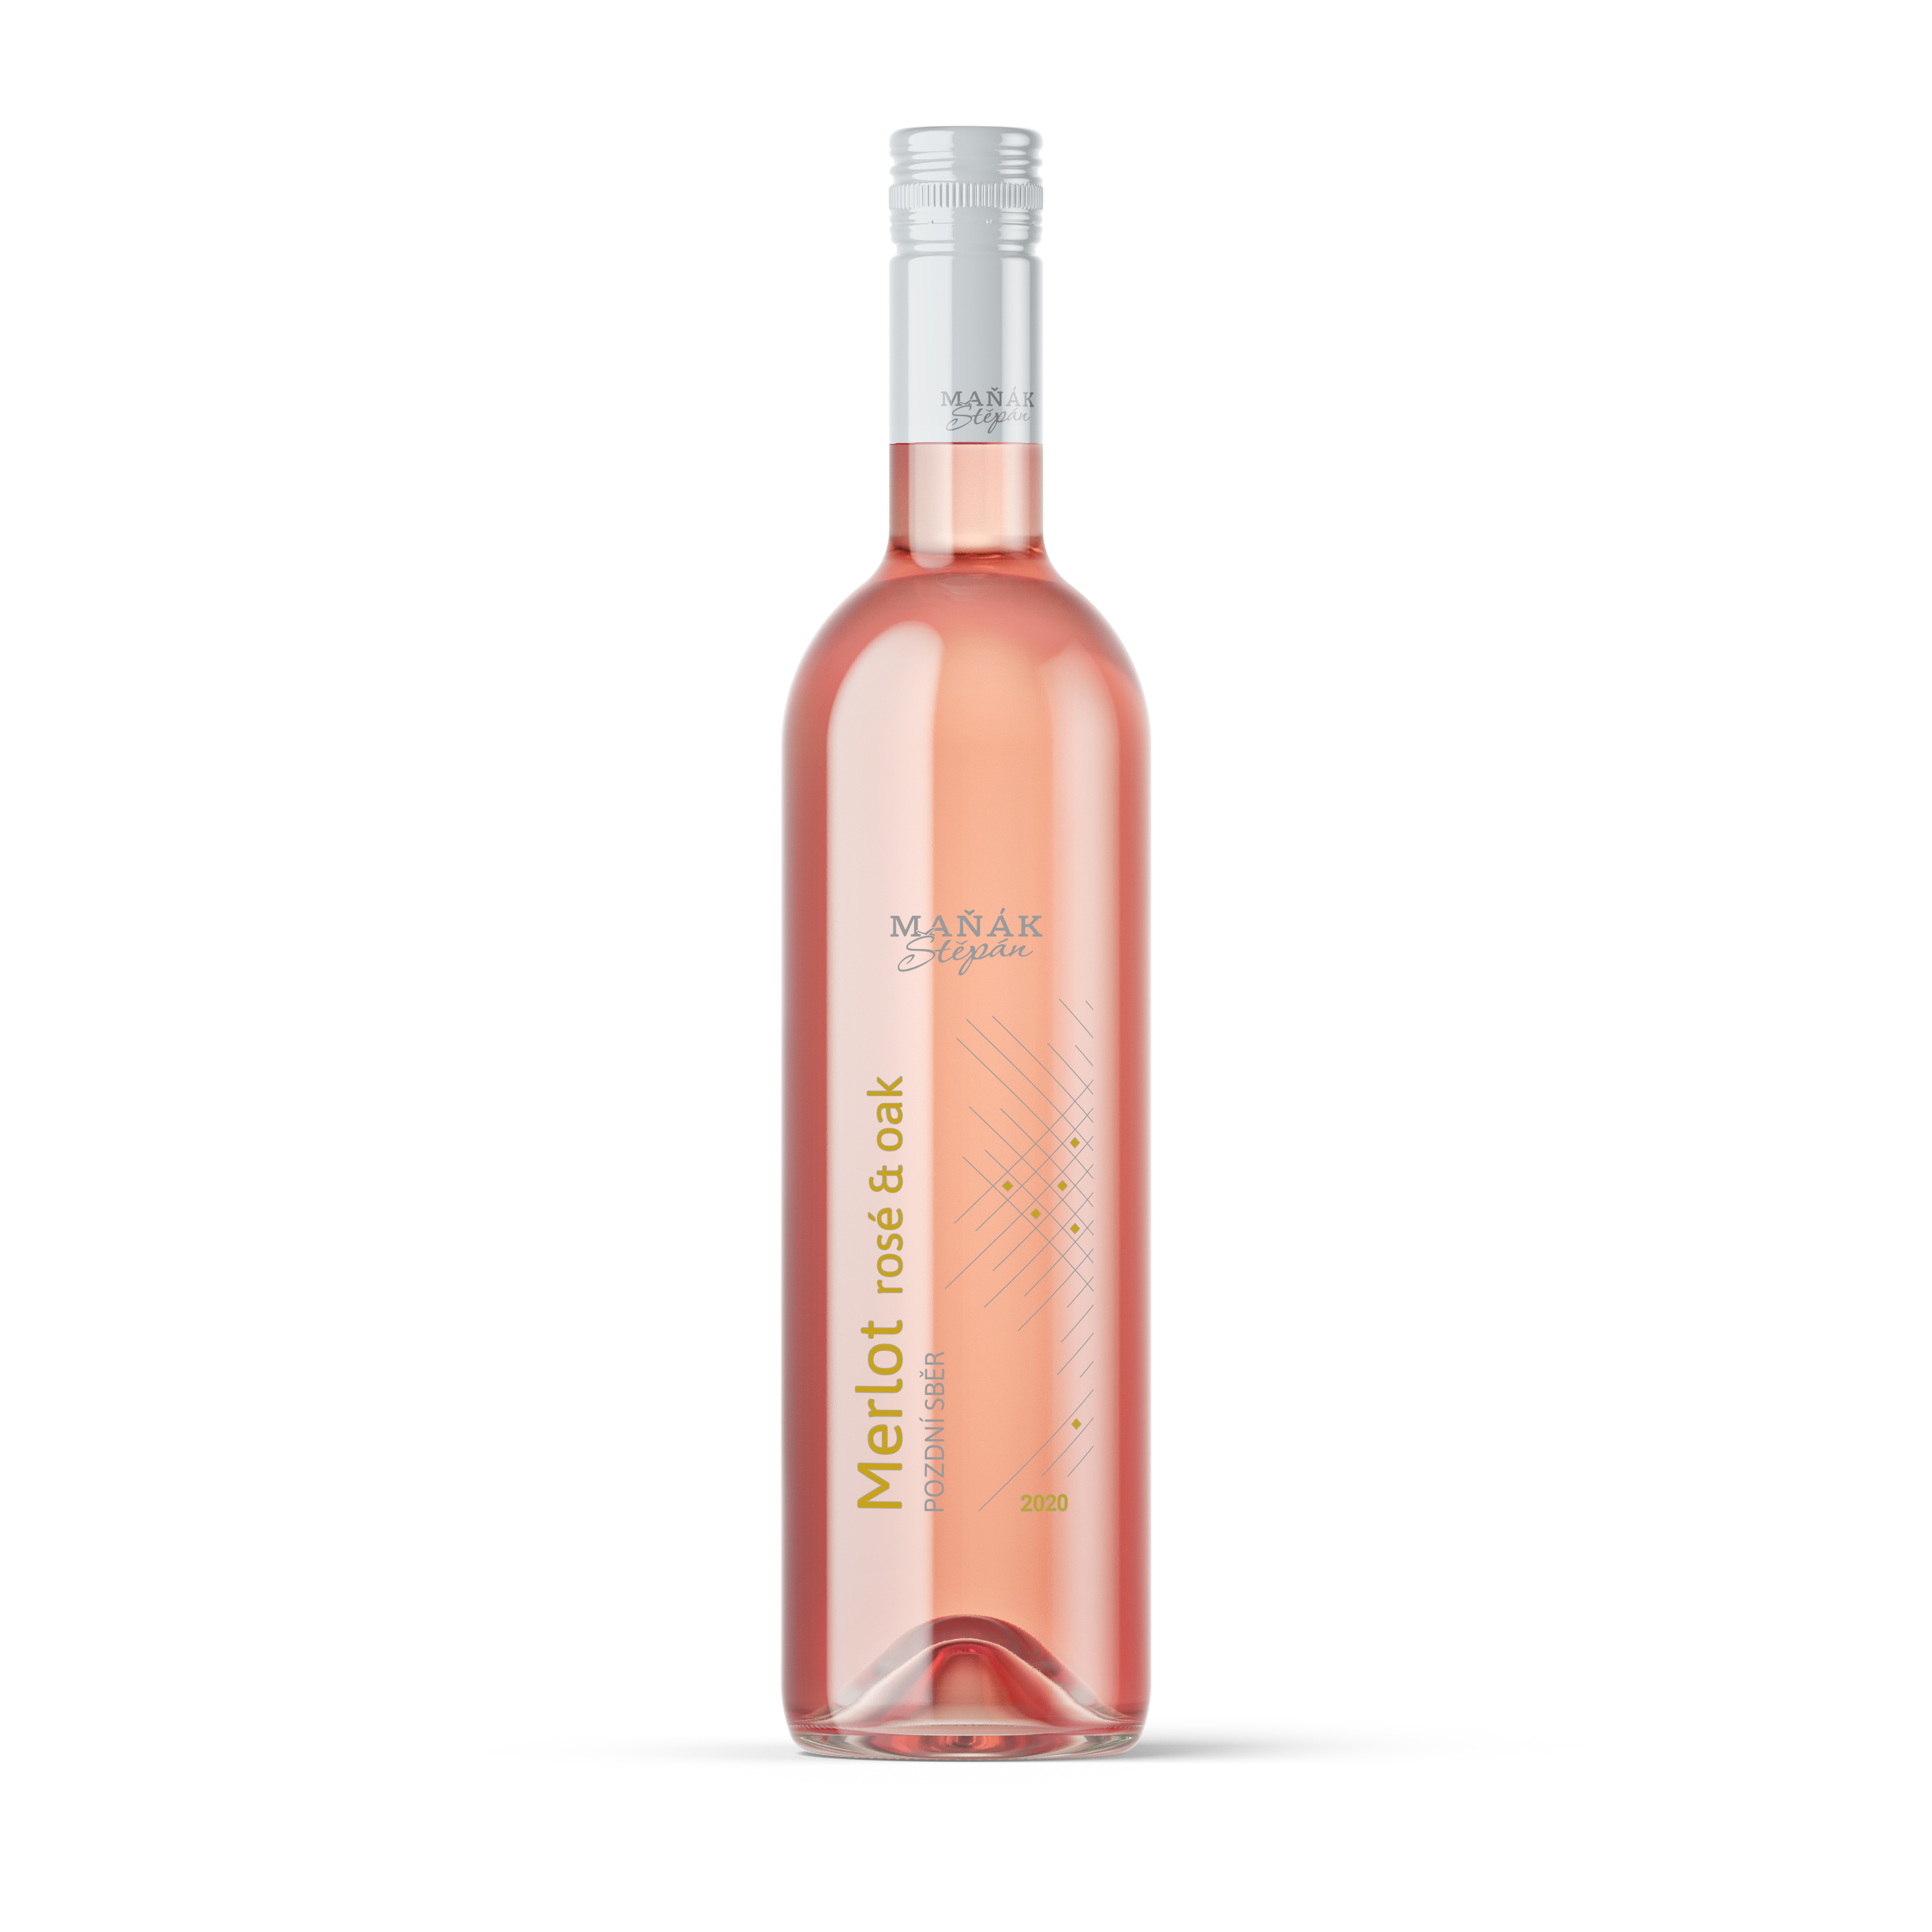 Vinnio Winery - Merot rosé & oak 2020